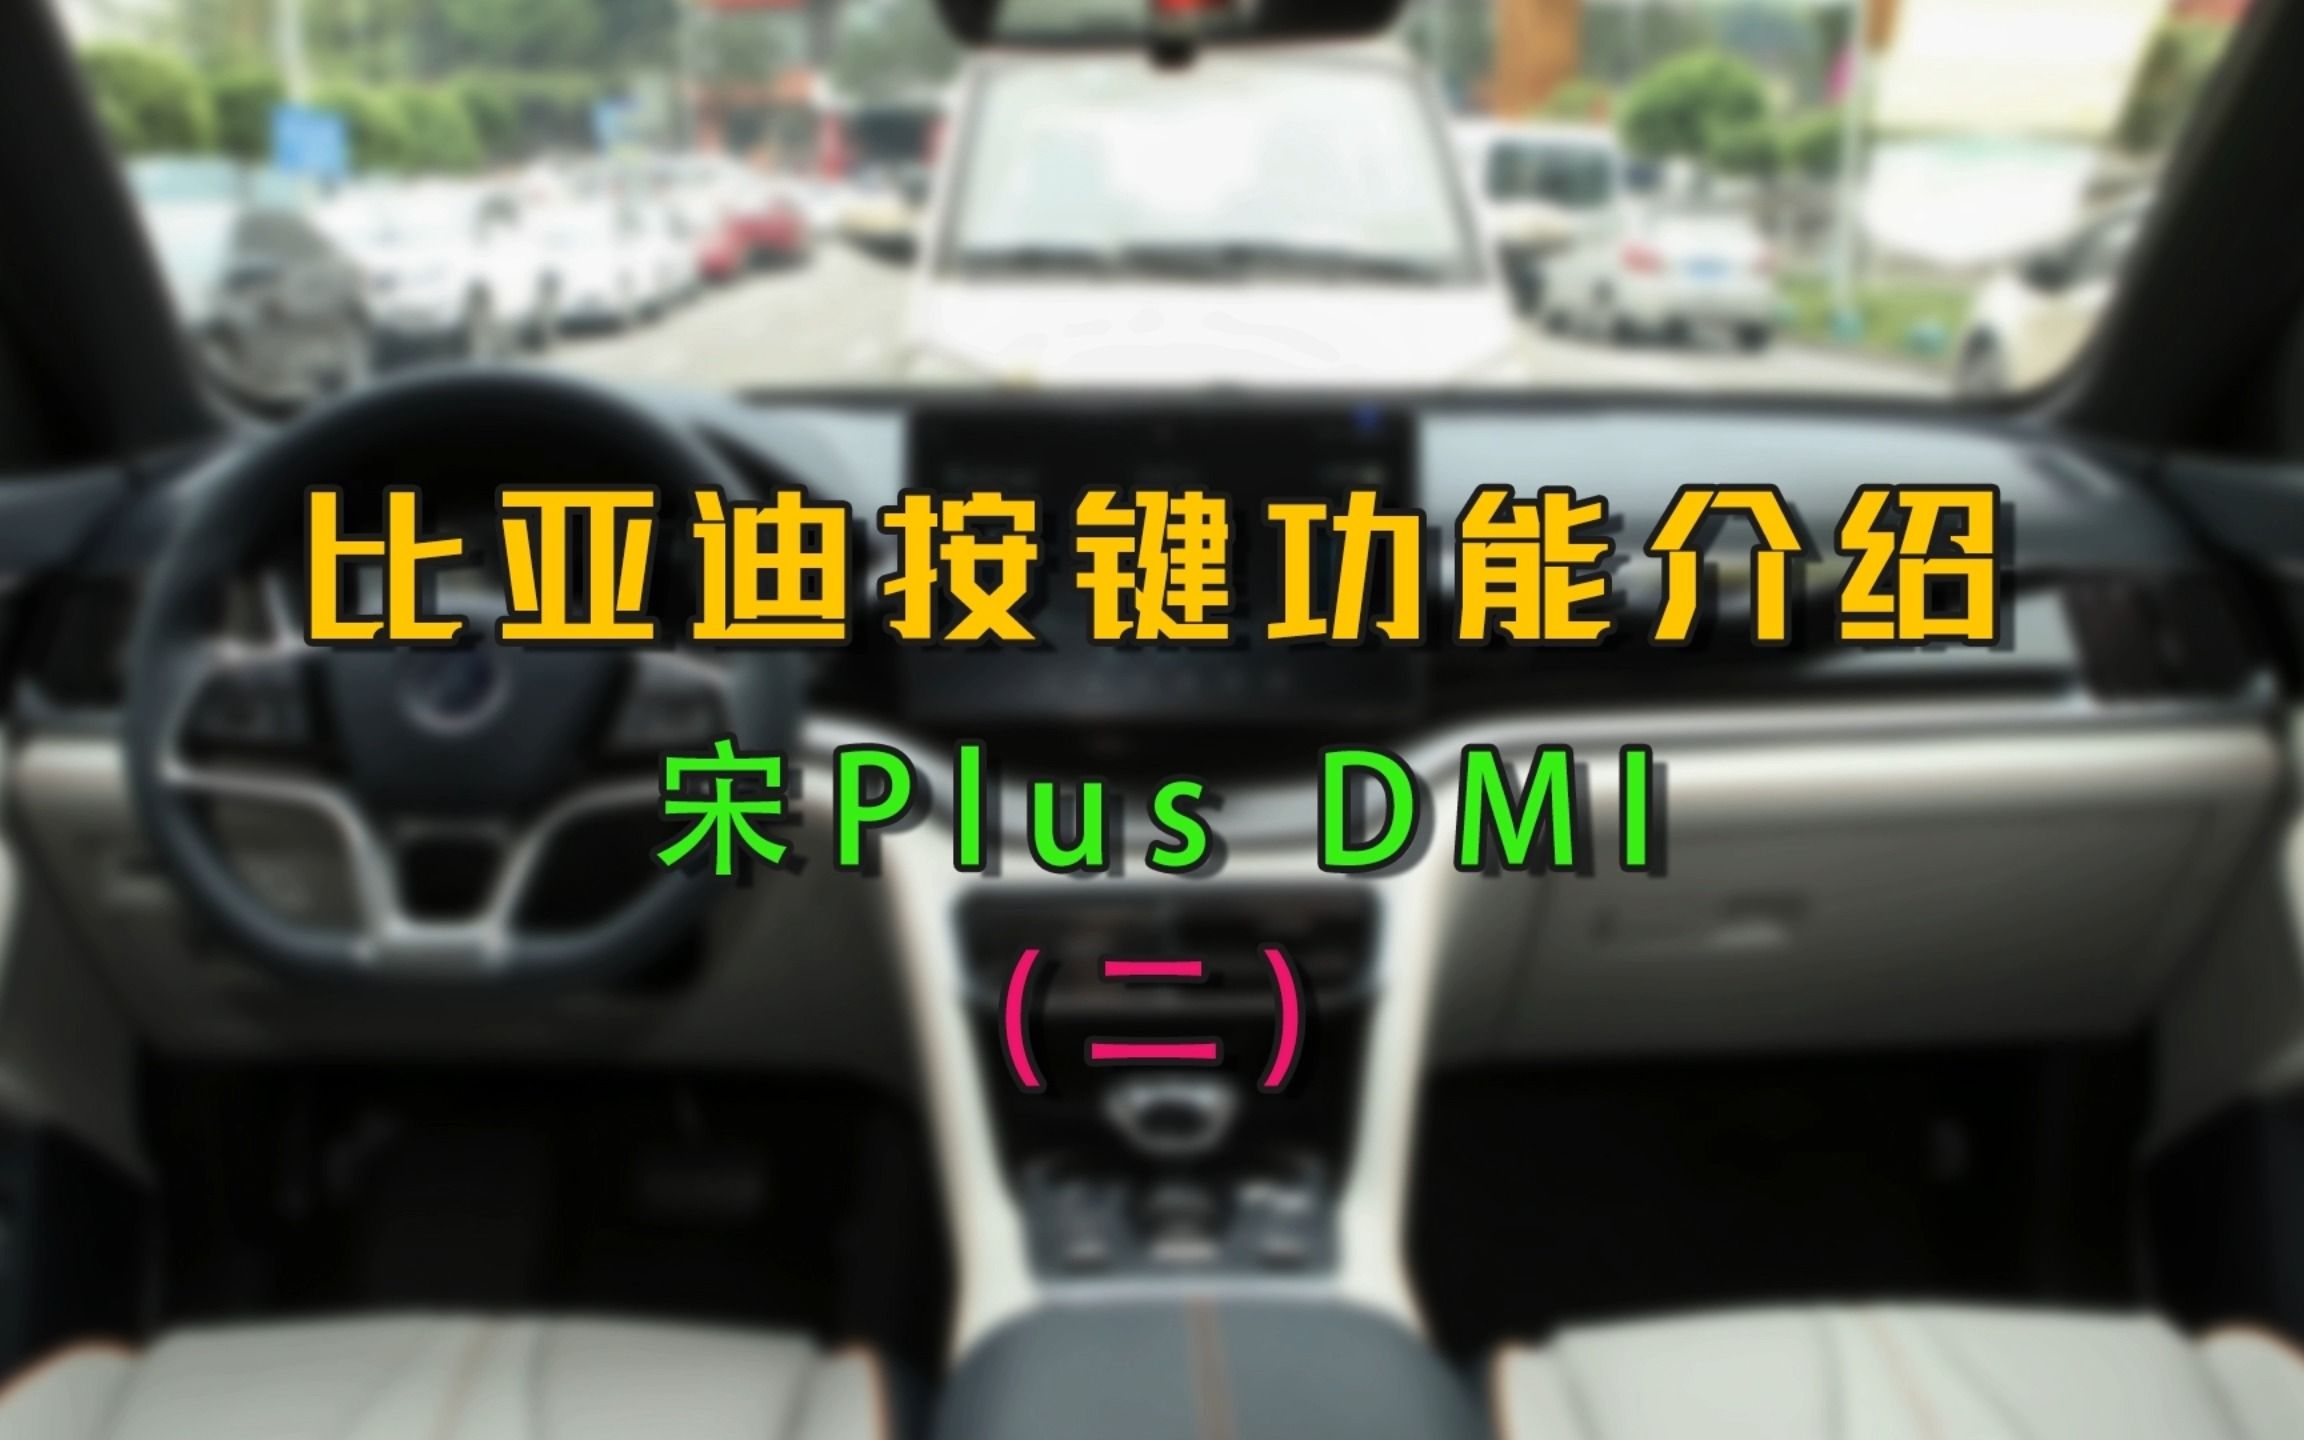 比亚迪宋Plus DMI 按键功能介绍 第二篇